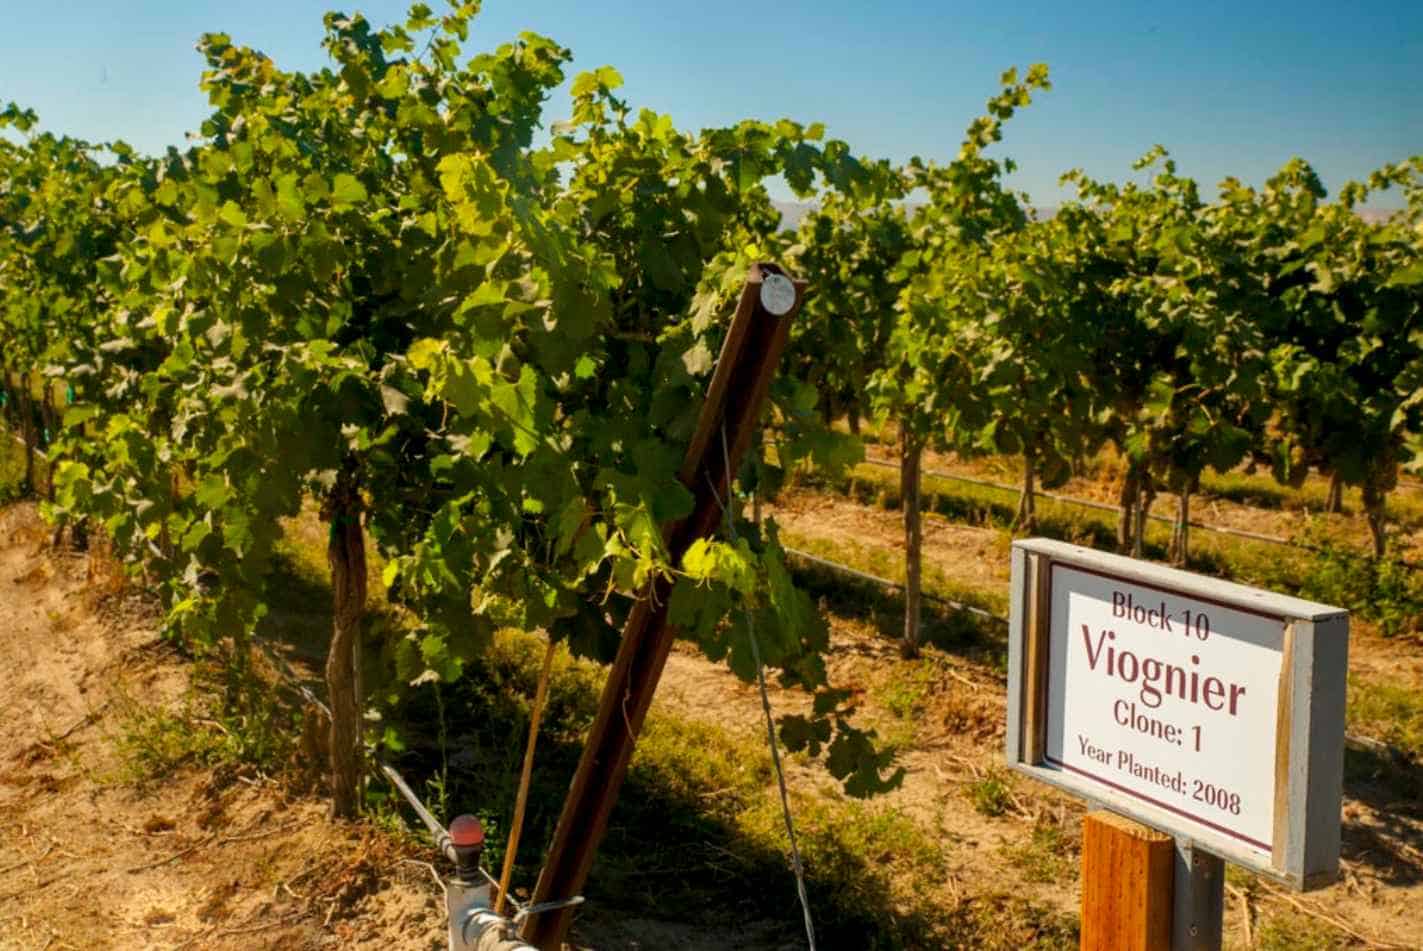 Where do the Viognier wine grapes grow